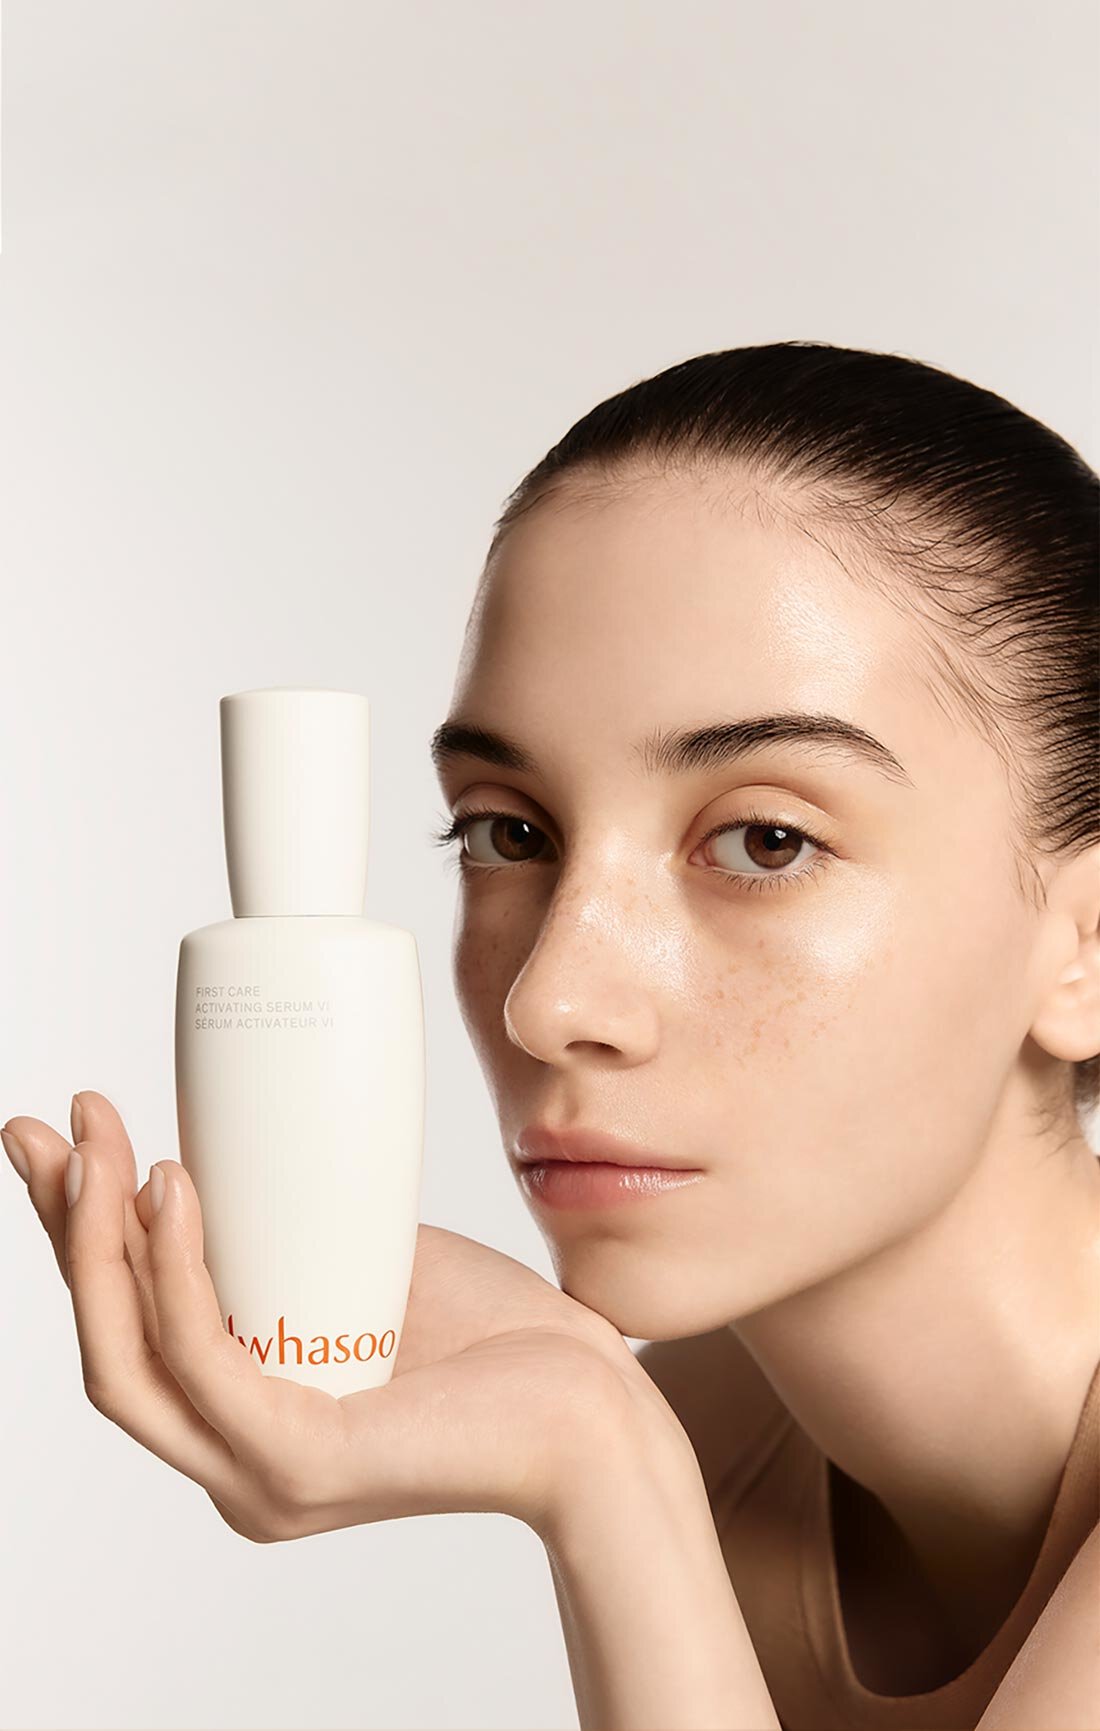 洗顔後、顔の保湿剤を使用する前に、アンチエイジング美容液である雪花秀ファーストケア アクティベーティング セラムを塗布すると、お肌が滑らかになり、再生され、より輝くようになります。